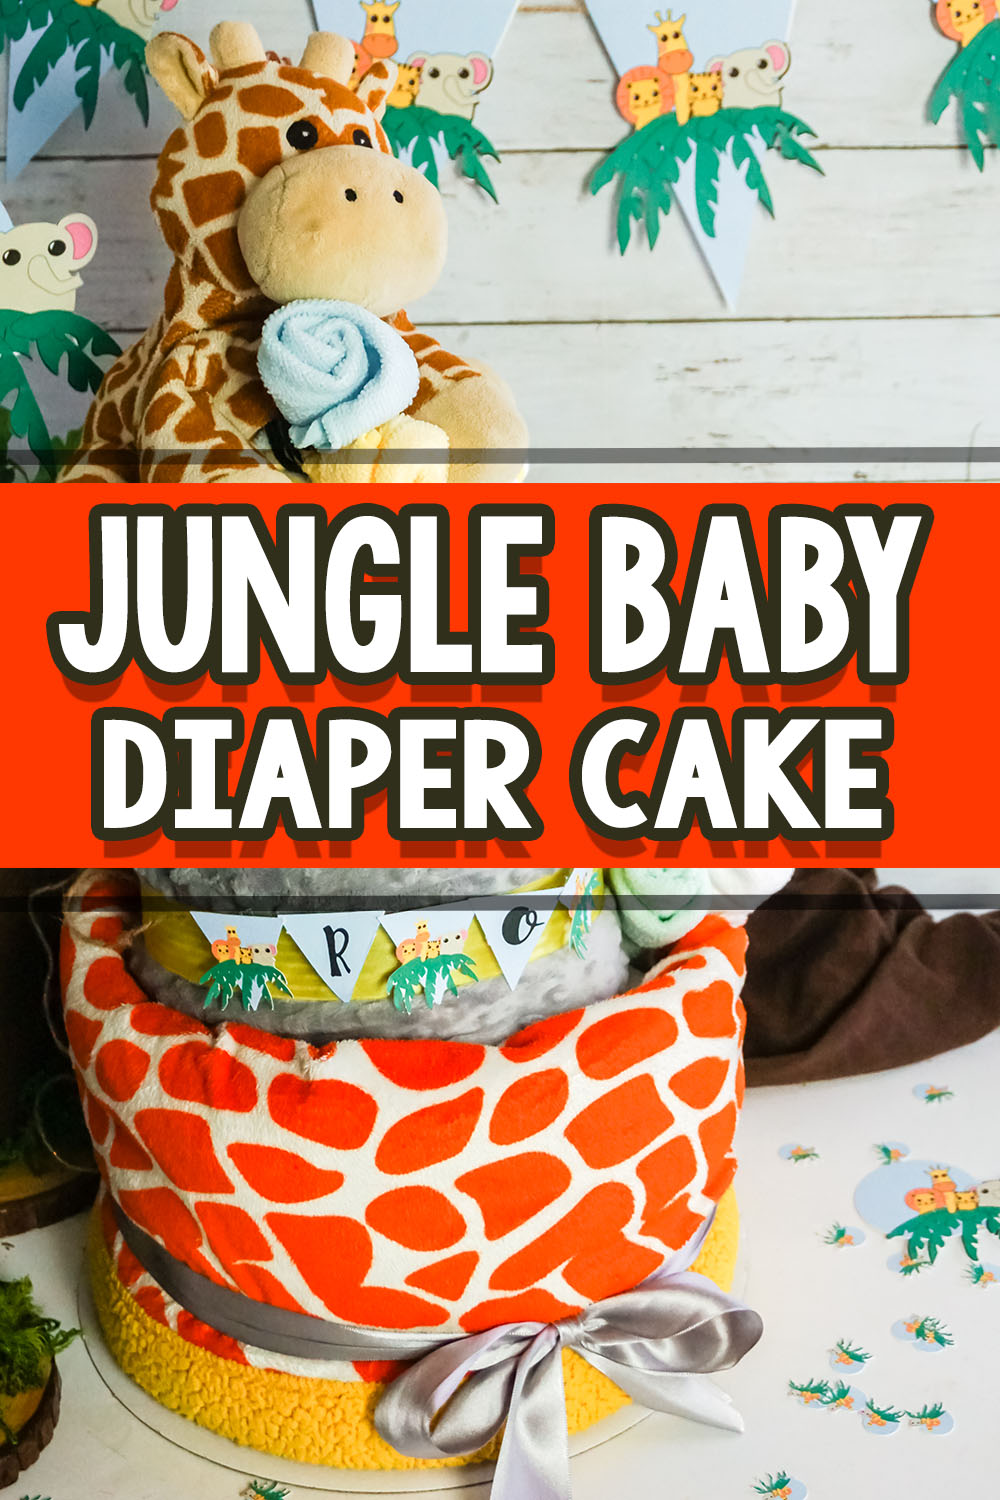 safari diaper cake decorating ideas